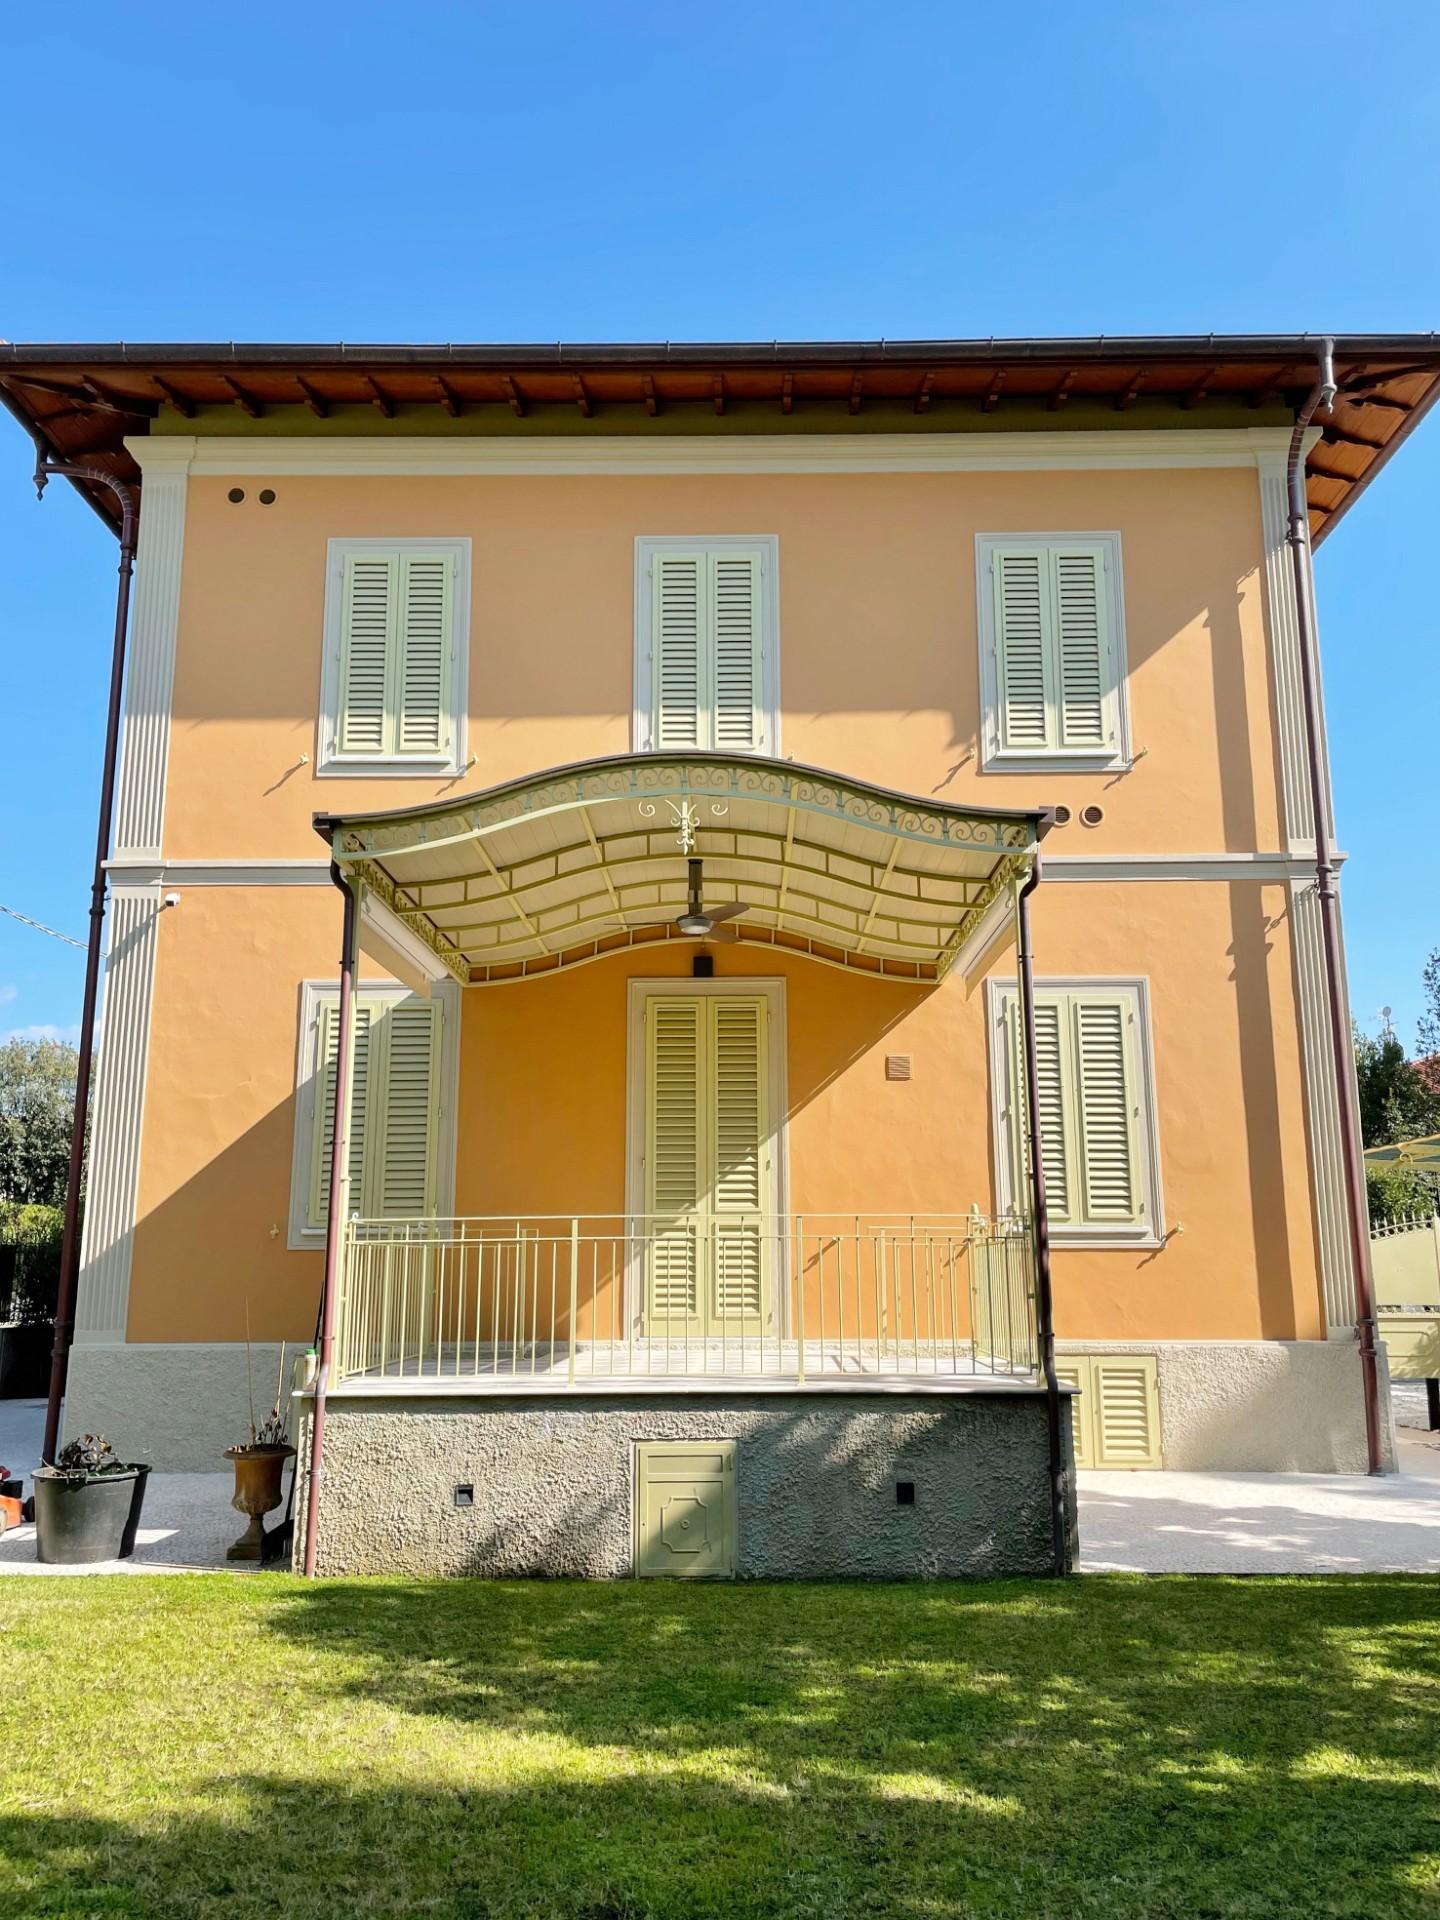 Villa for sale in Forte dei Marmi (LU)